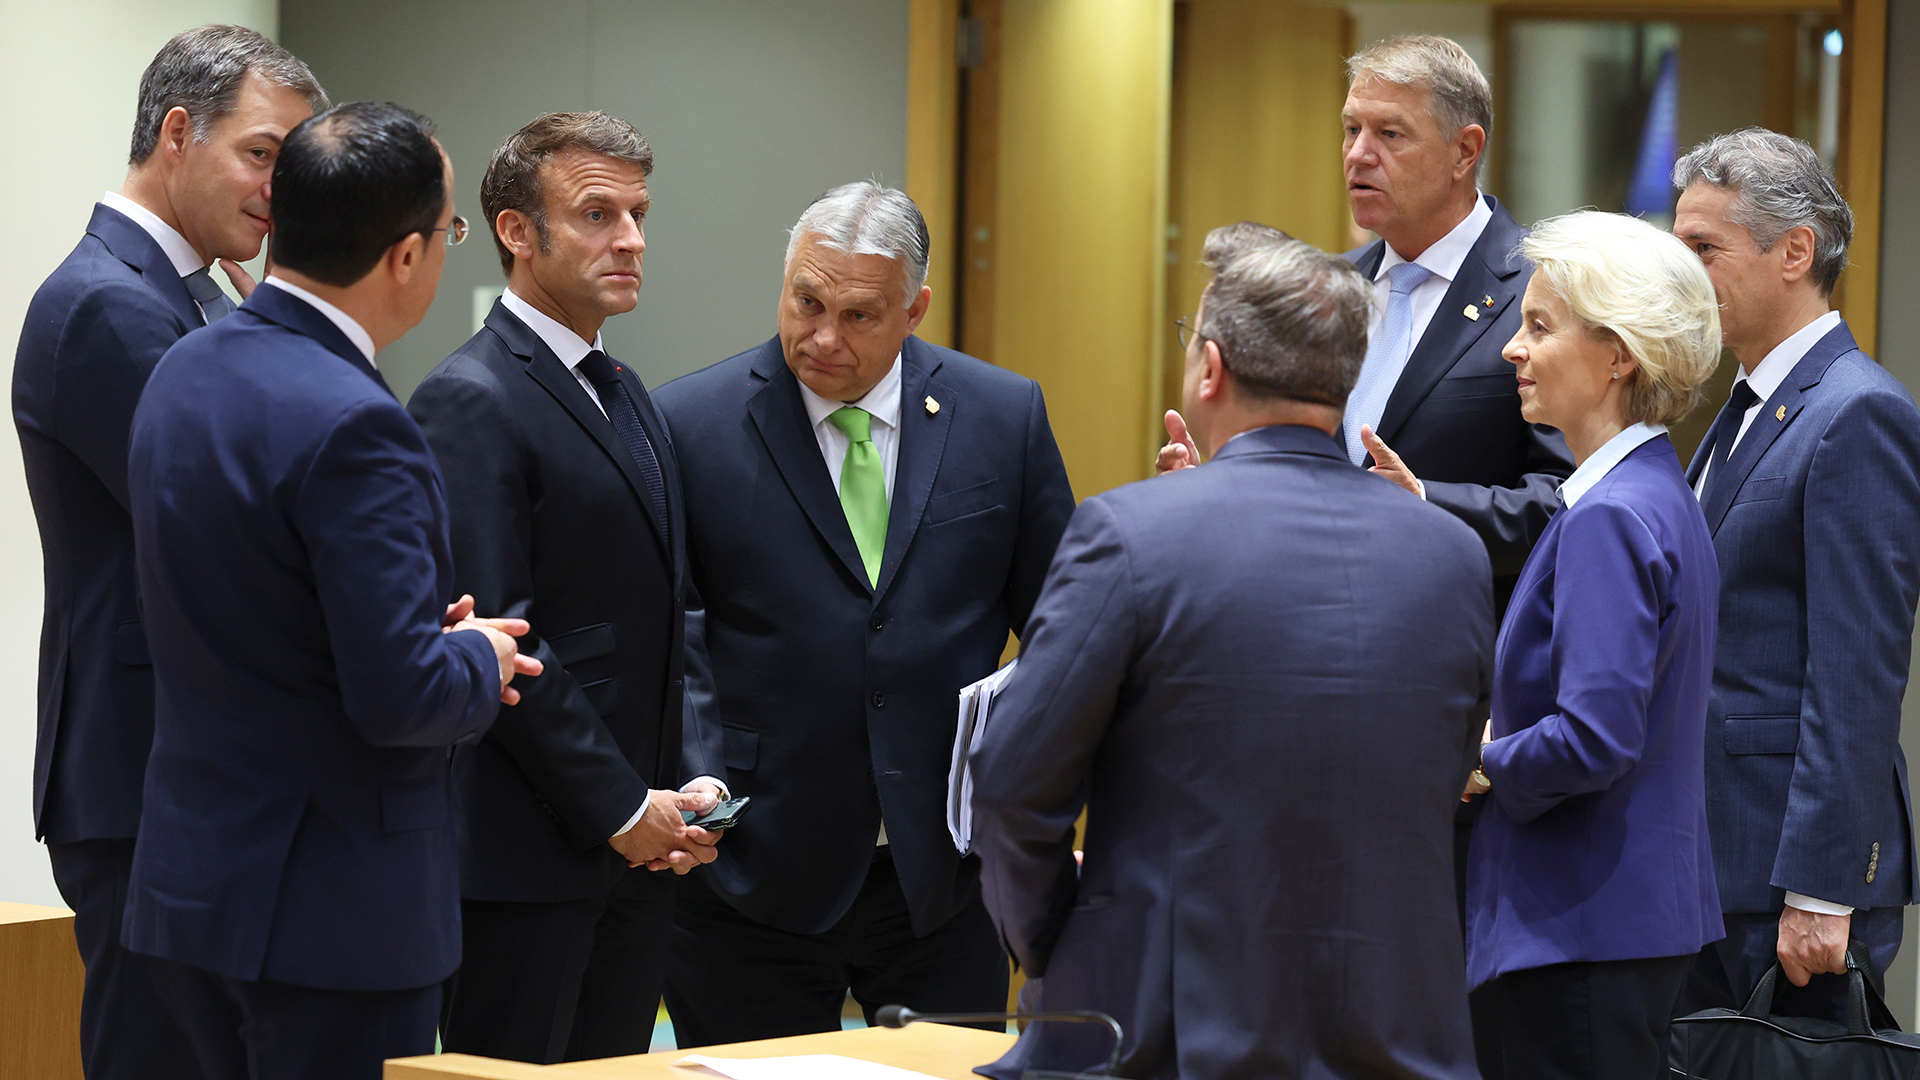 Teilnehmer des EU-Gipfels während eines Treffens am runden Tisch im Gebäude des Europäischen Rates in Brüssel.